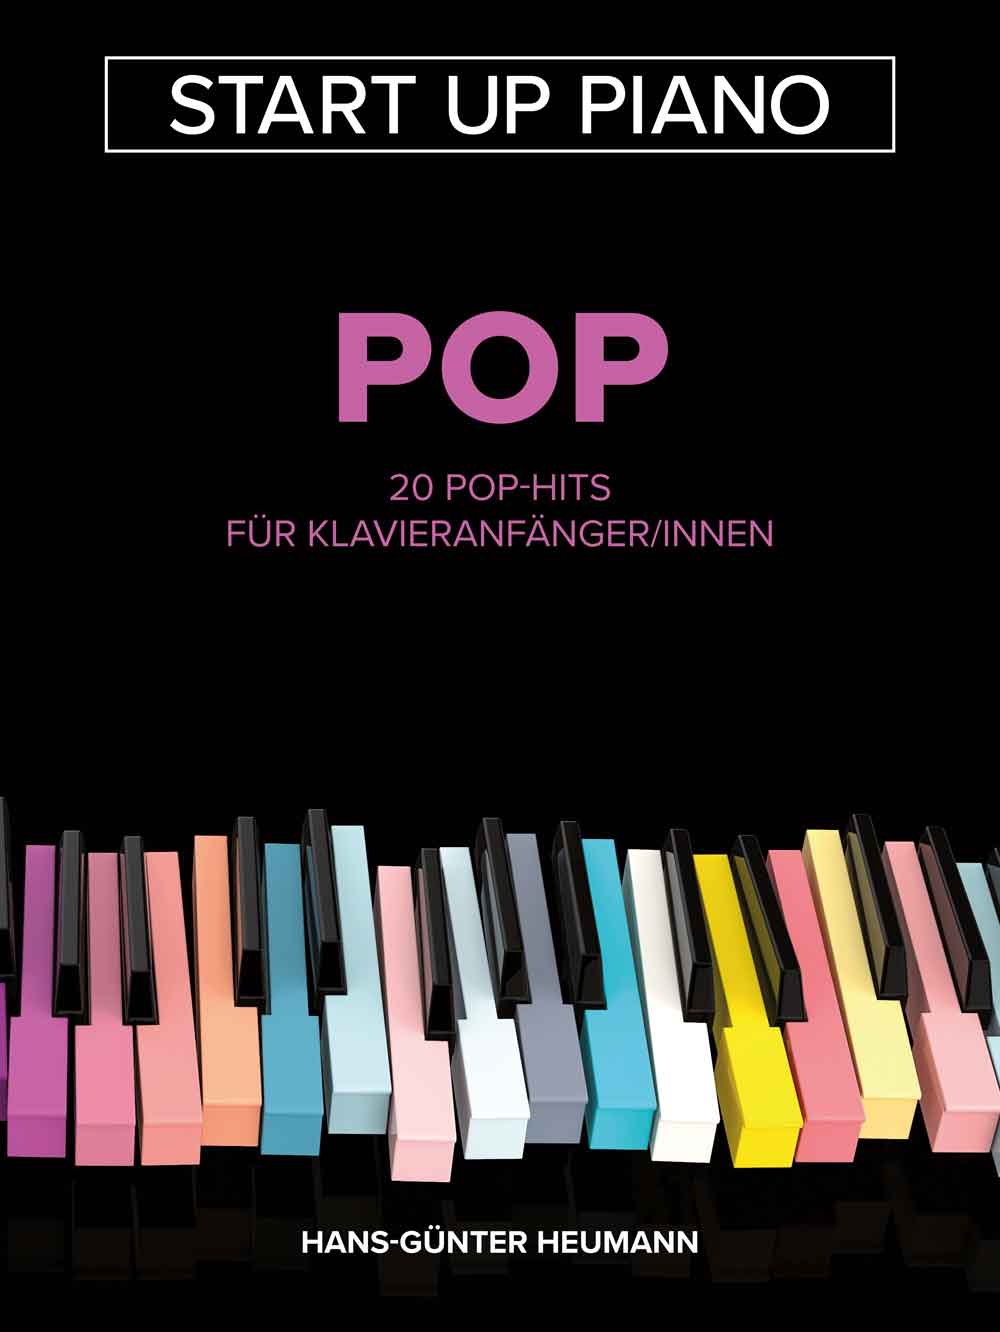 Start Up Piano - Pop: 20 Pop-Hits für Klavieranfänger/innen